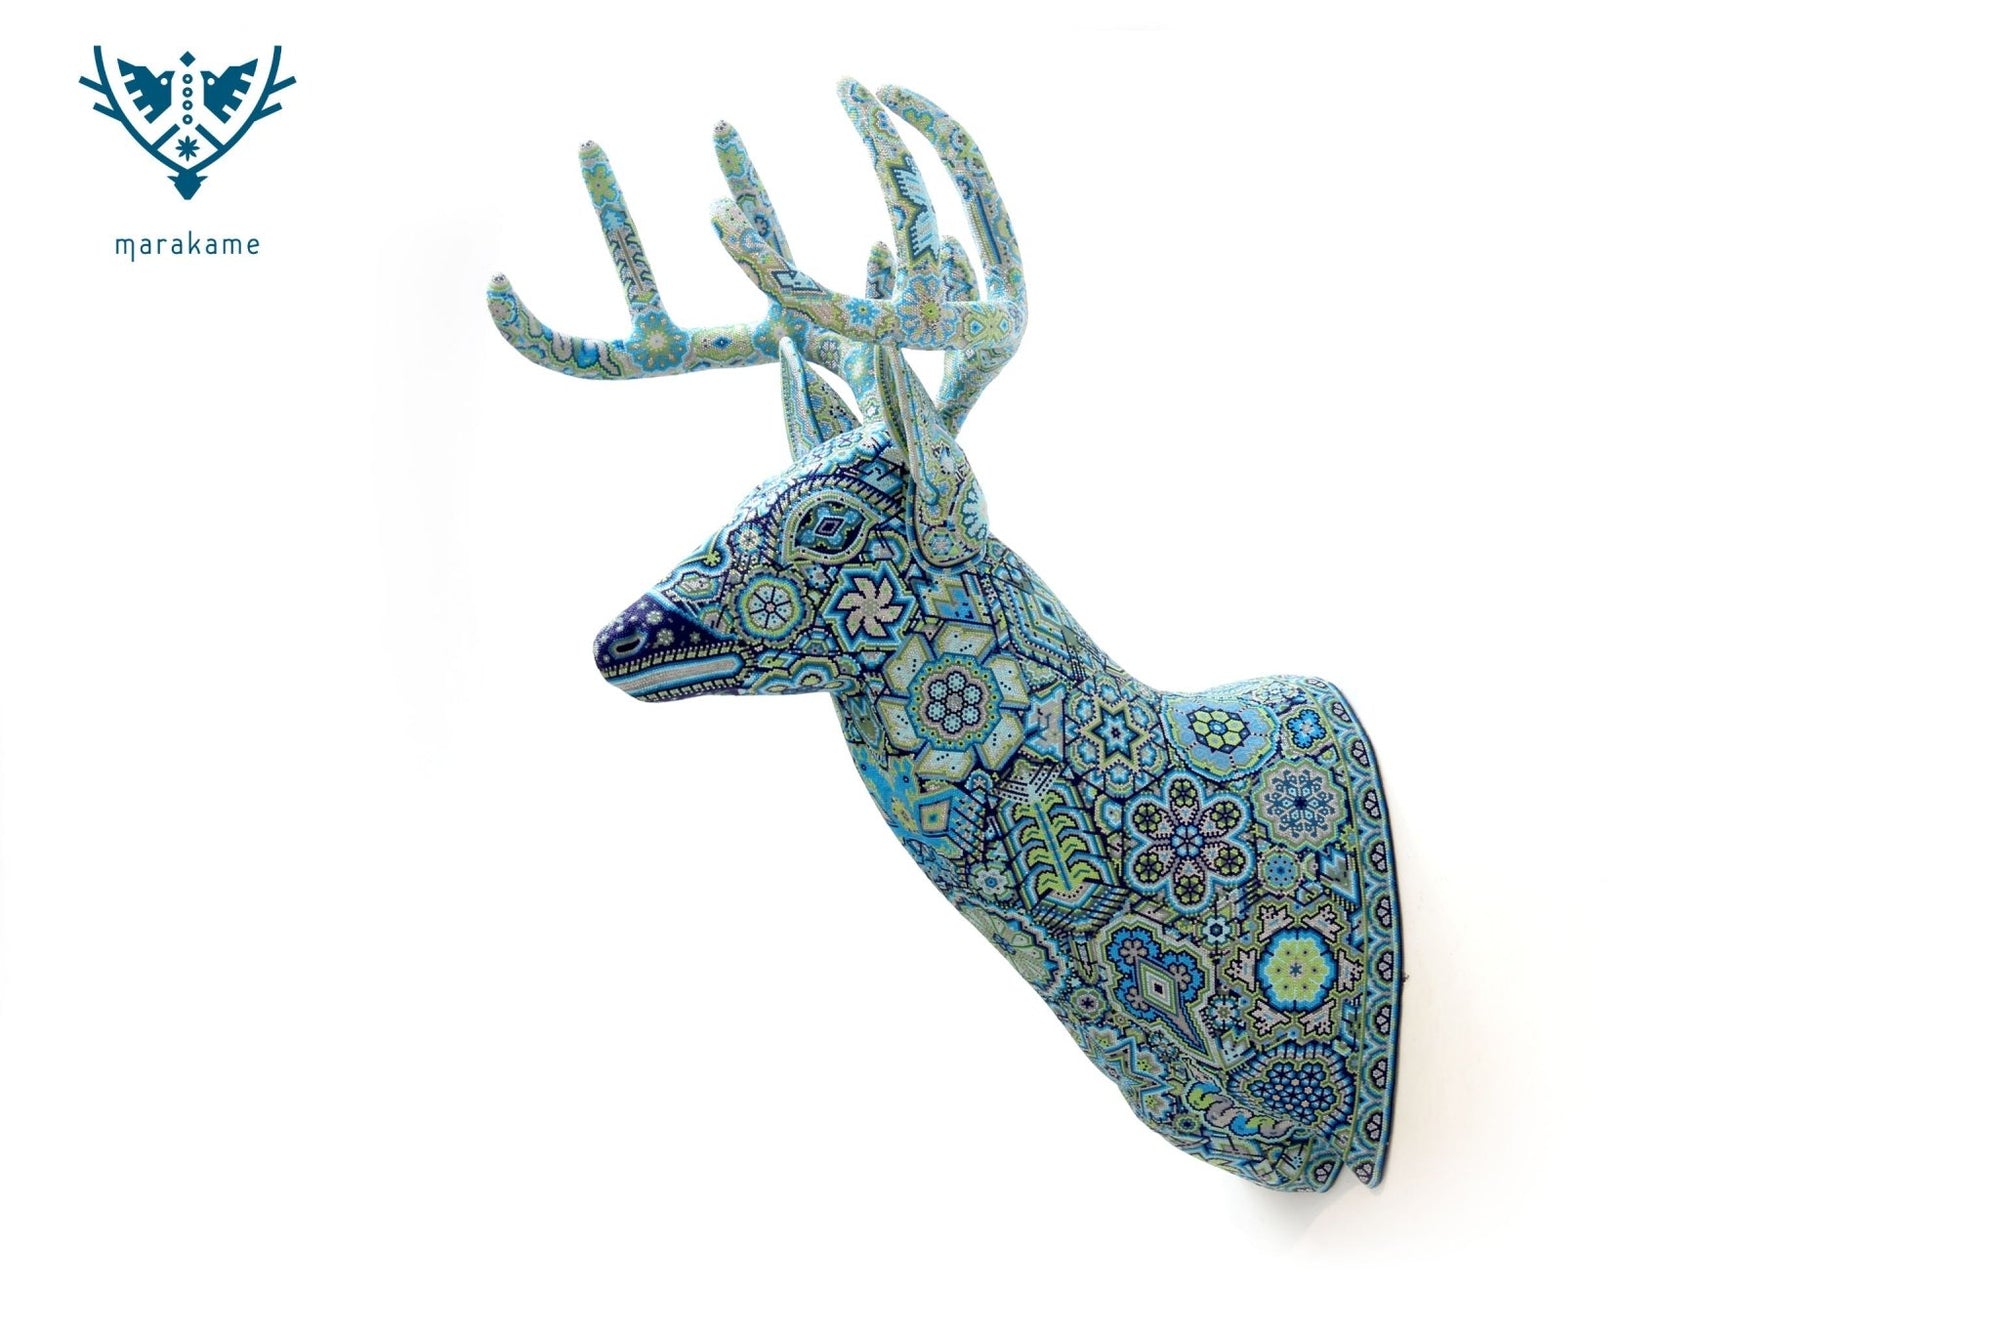 彫刻 ウイチョル族アート - 青い鹿の頭 - カウユマリー - ウイチョル族アート - マラカメ